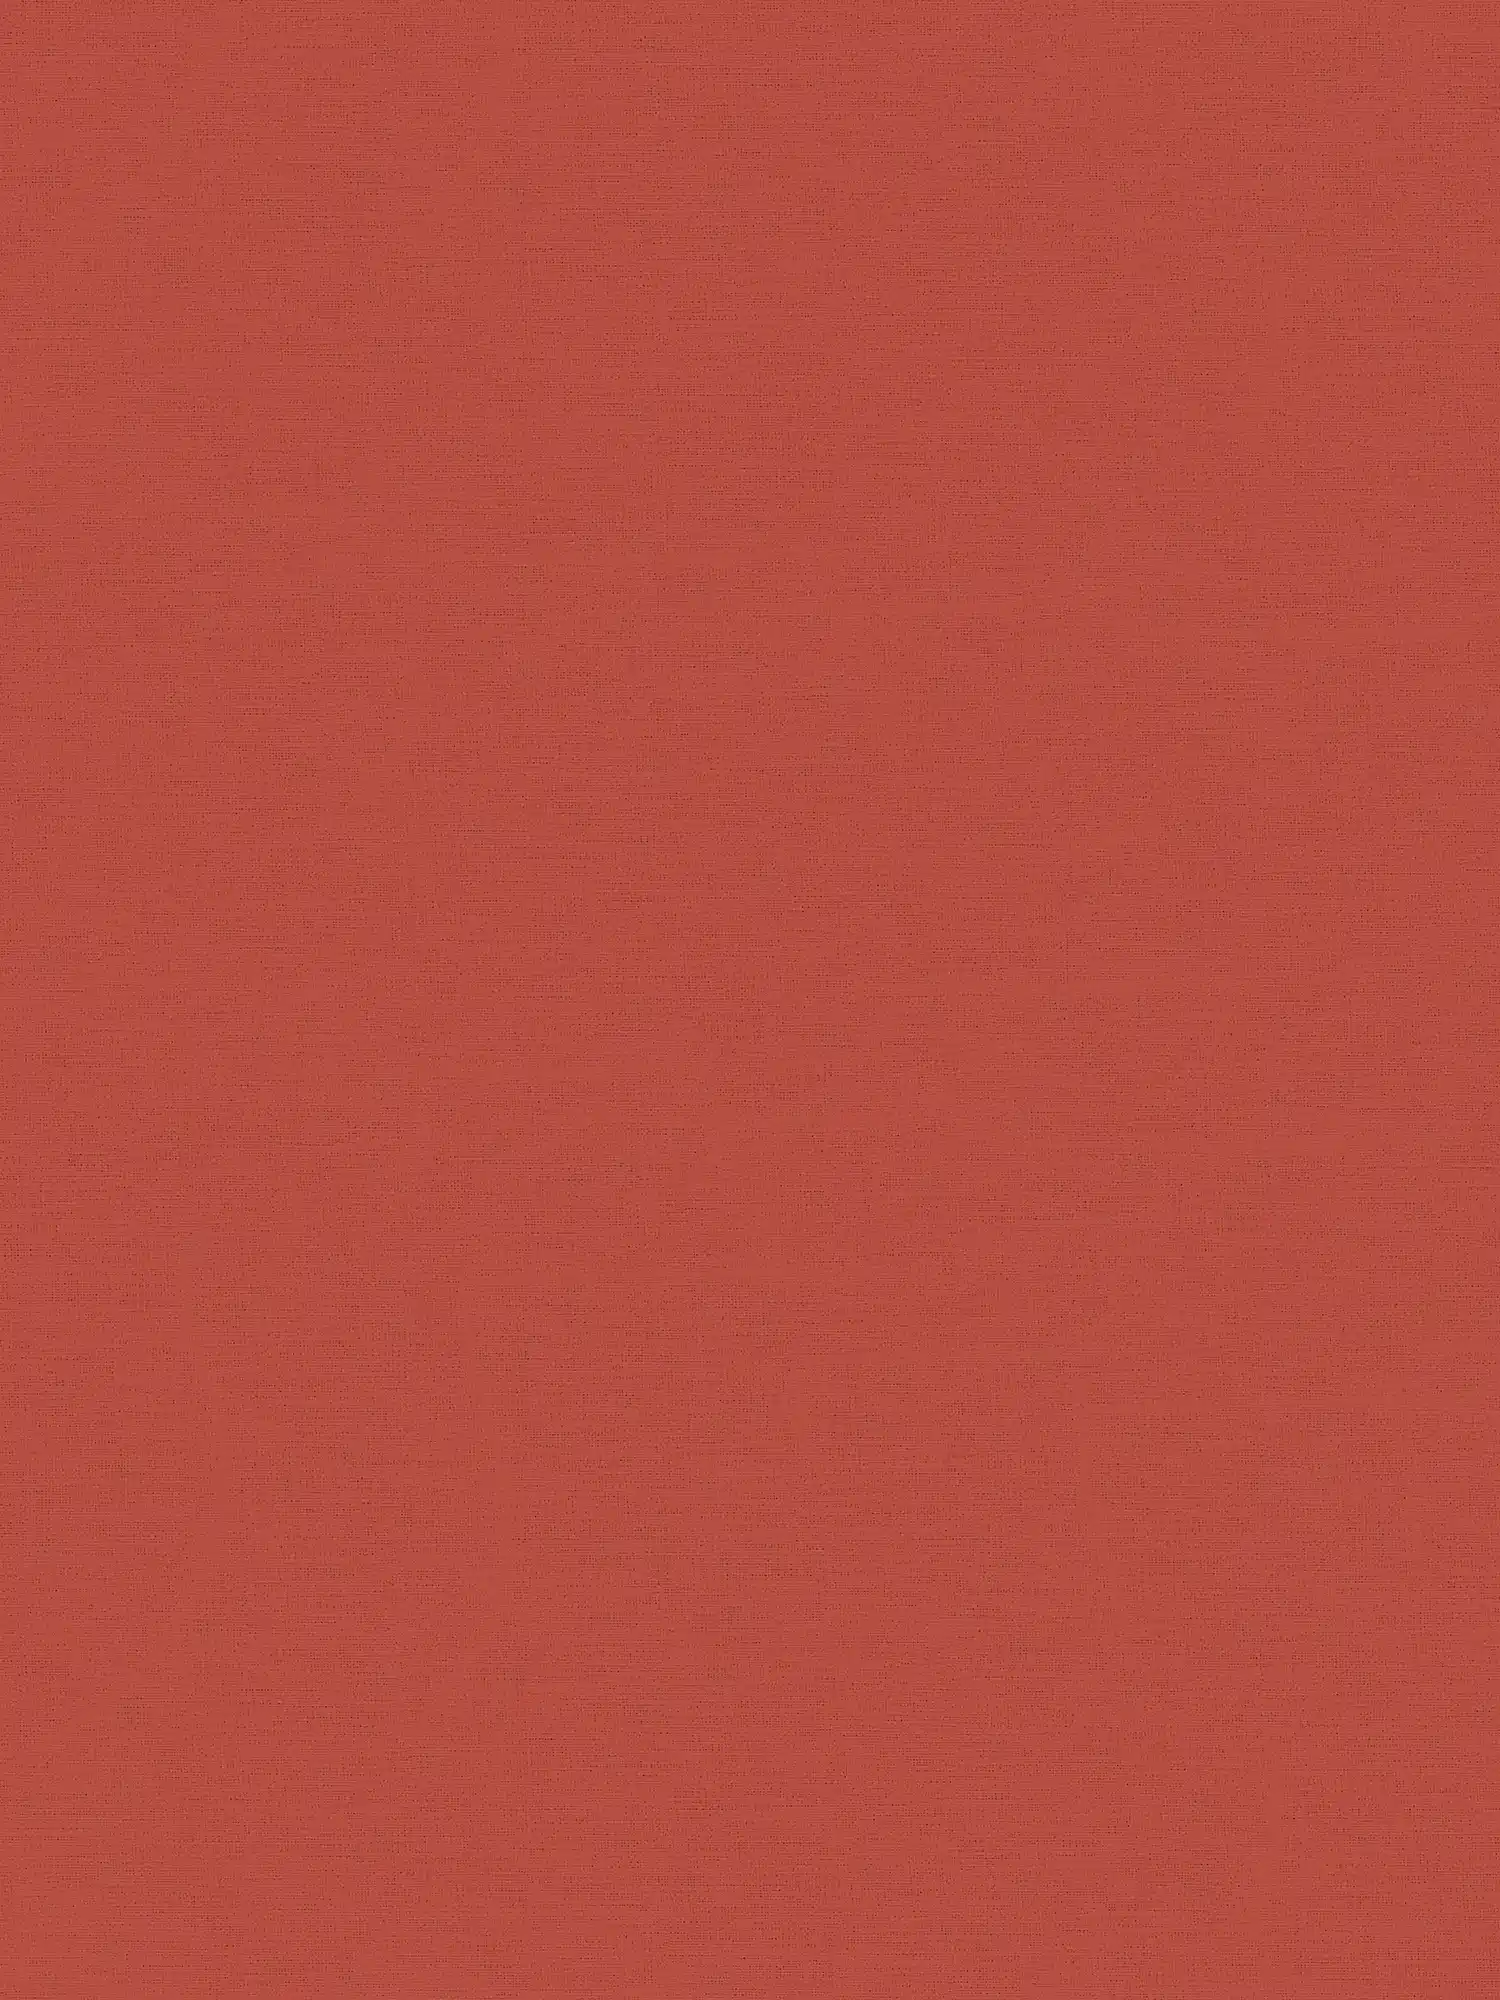 Papel pintado rojo chimenea rojo liso con diseño textil
